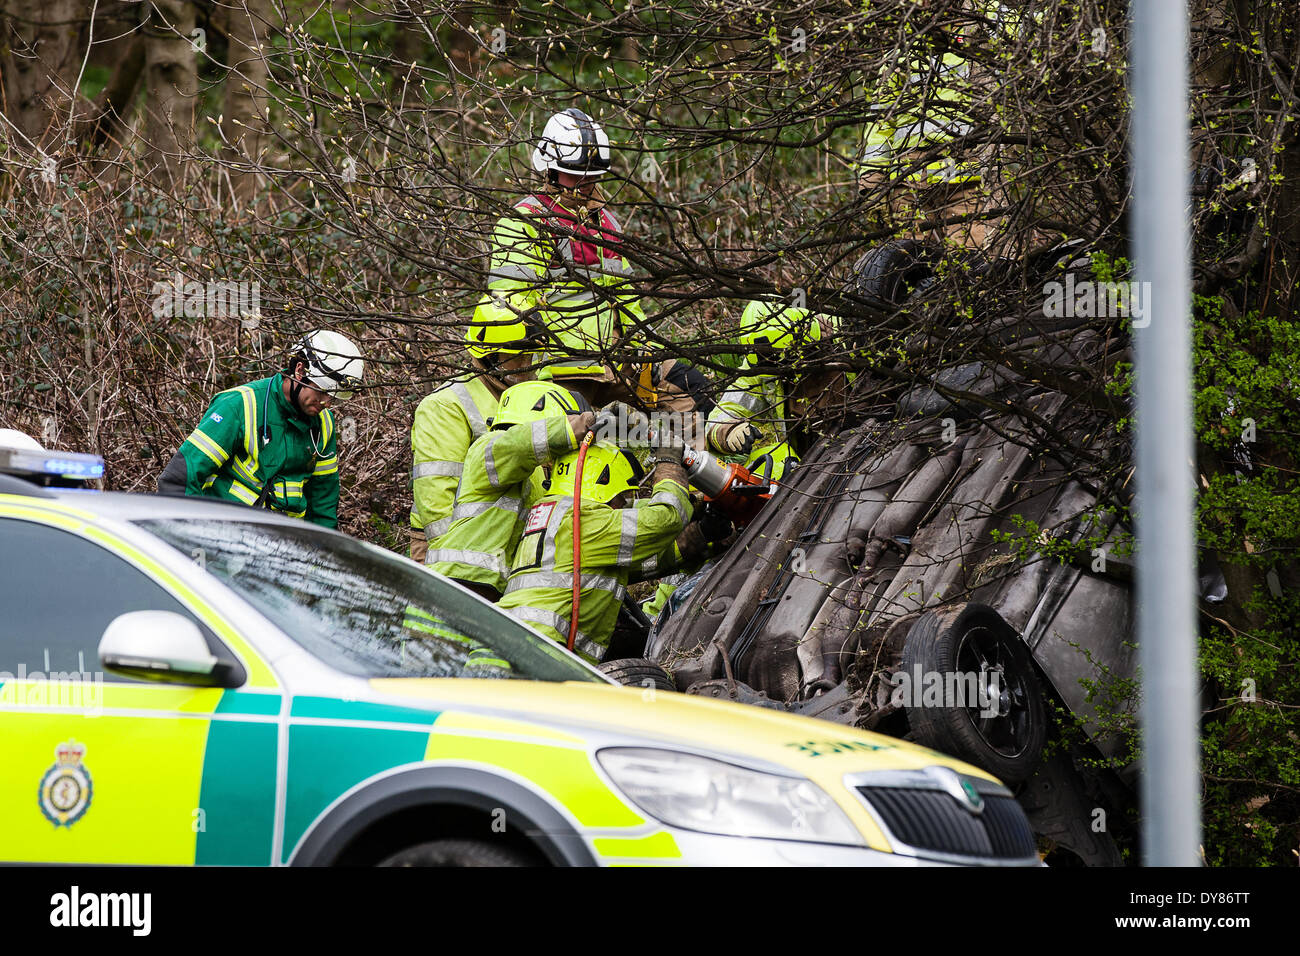 Queenswood dur, Leeds West Yorkshire UK 9 avril 2014. Les services d'urgence assister à un incident survenu à autour de 14 heures dans lequel un véhicule s'est retourné dans une longue rue de banlieue. Deux personnes ont été coupées à l'abri de la voiture qui s'est retrouvée sur son toit dans un bois au bord de la route dans le parc Becketts zone LS6 et retiré de la scène en ambulance. Le West Yorkshire Air Ambulance a également assisté à la scène mais n'a pas été utilisée pour le transport des blessés. Un autre véhicule, une Seat Ibiza jaune, qui a été vu pour être endommagé a également été stationnée à proximité. Crédit : Ian Wray/Alamy Live News Banque D'Images